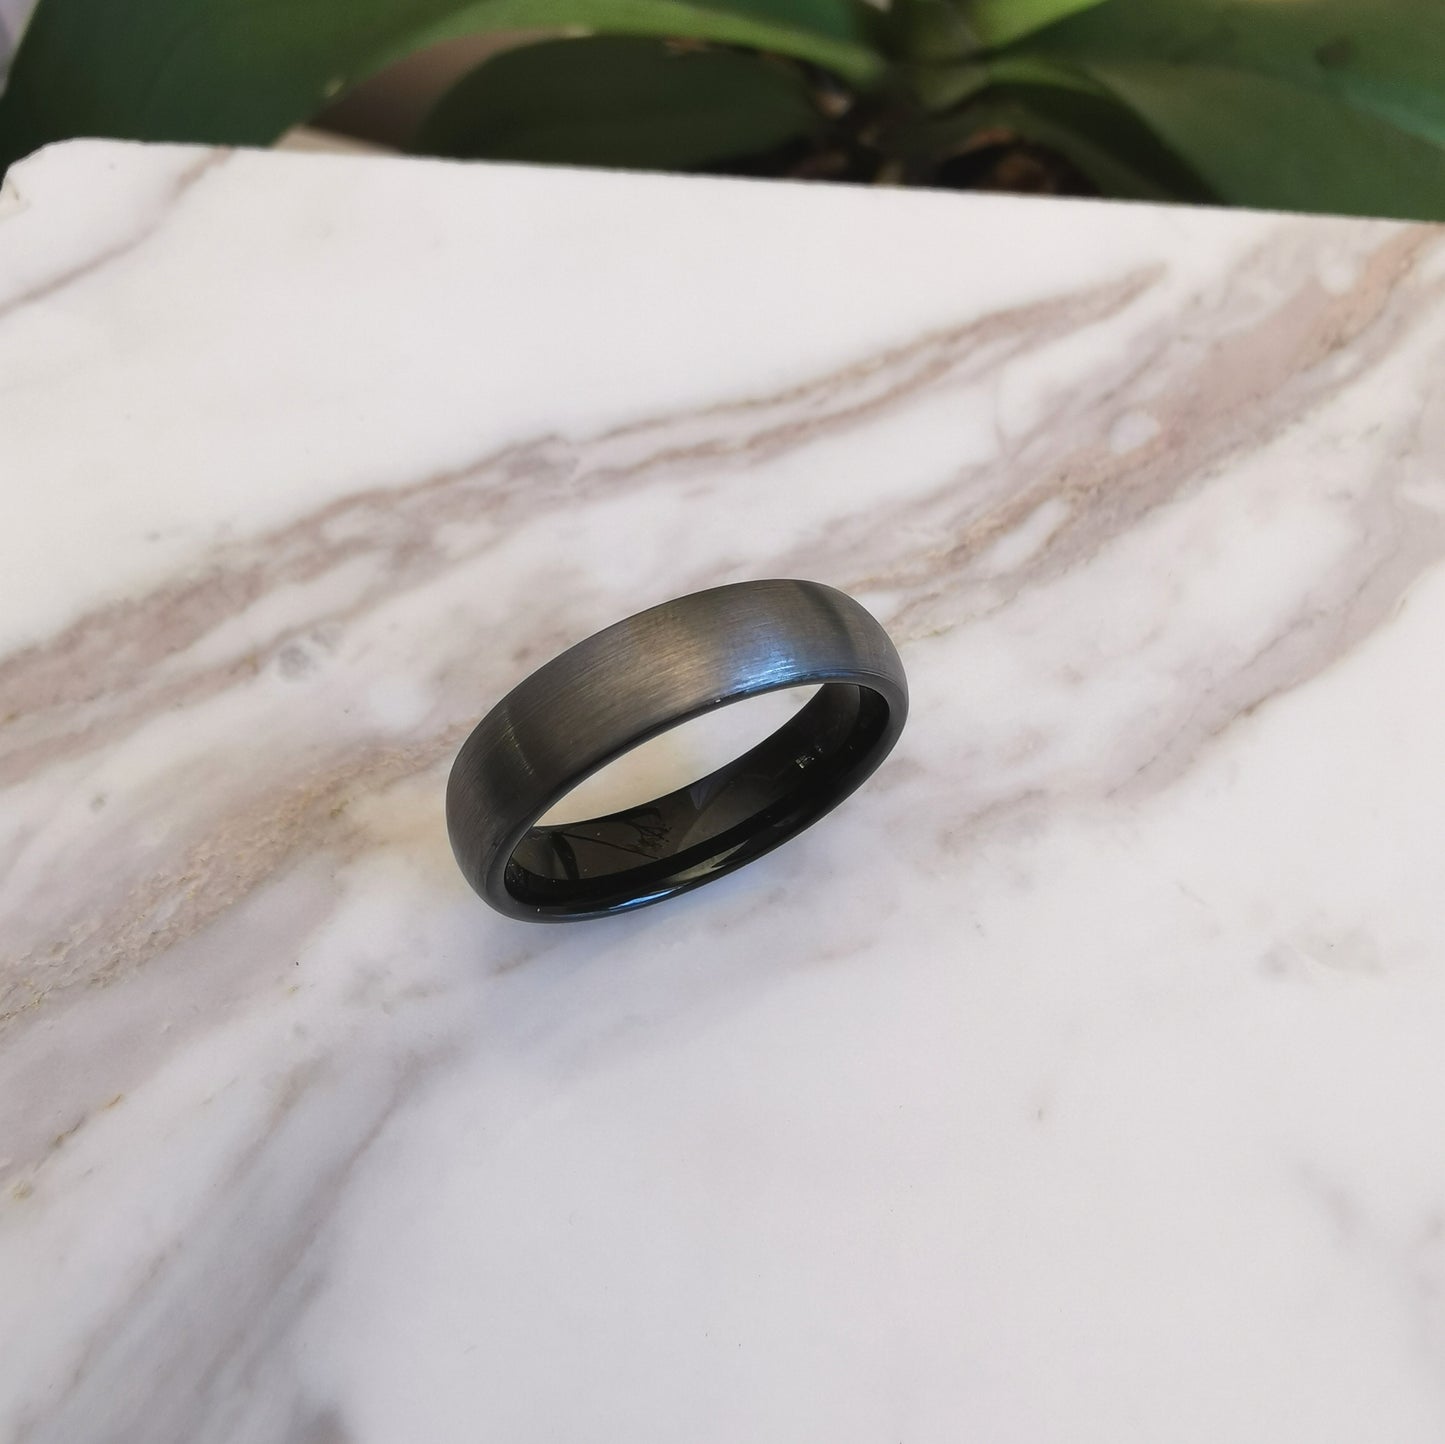 6mm Wide Matt Tungsten Ring with Black Interior